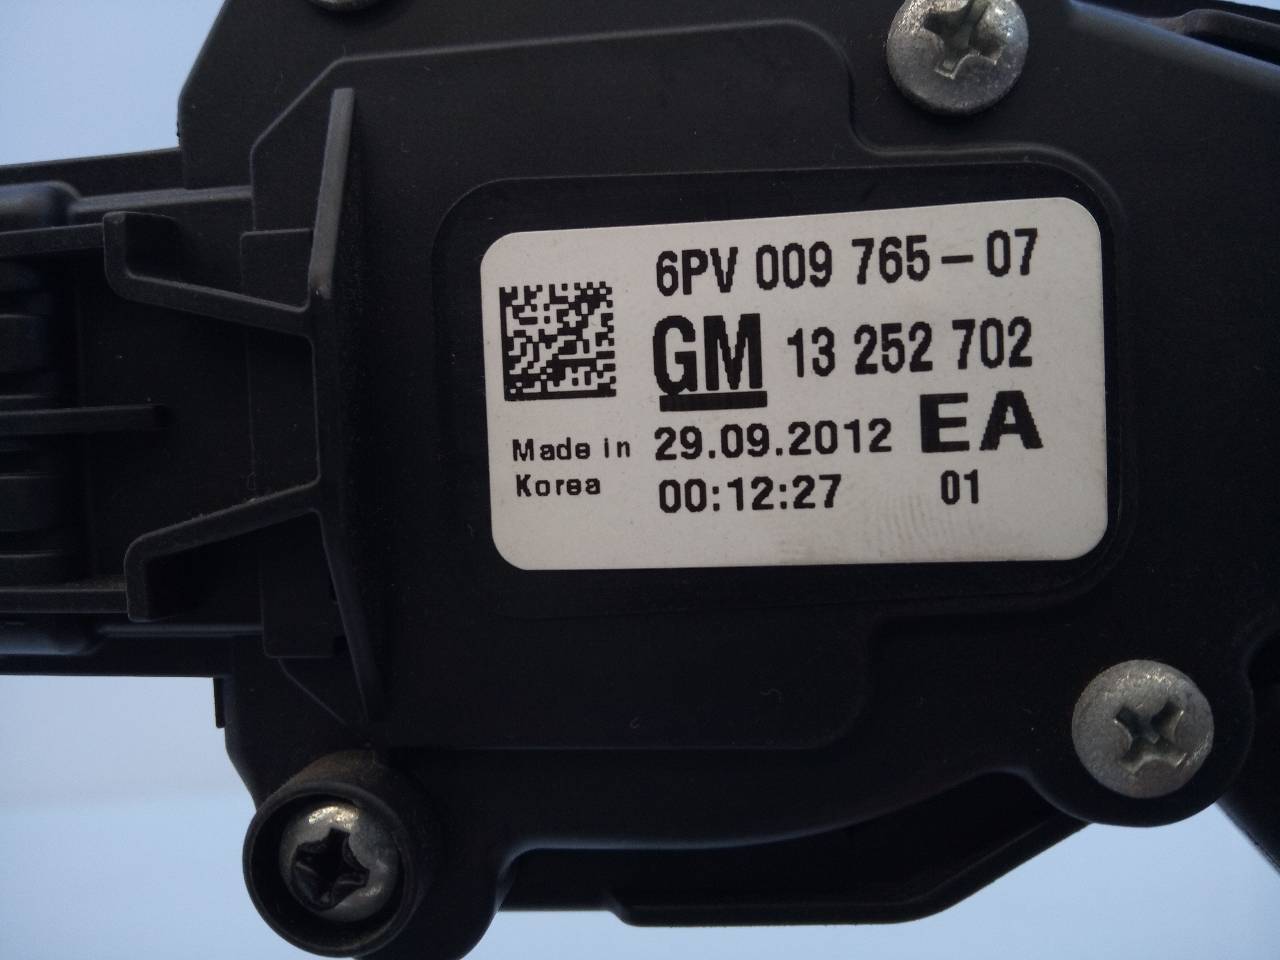 CHEVROLET Cruze 1 generation (2009-2015) Педаль газа 13252702, 6PV00976507, E3-A5-3-4 18720304